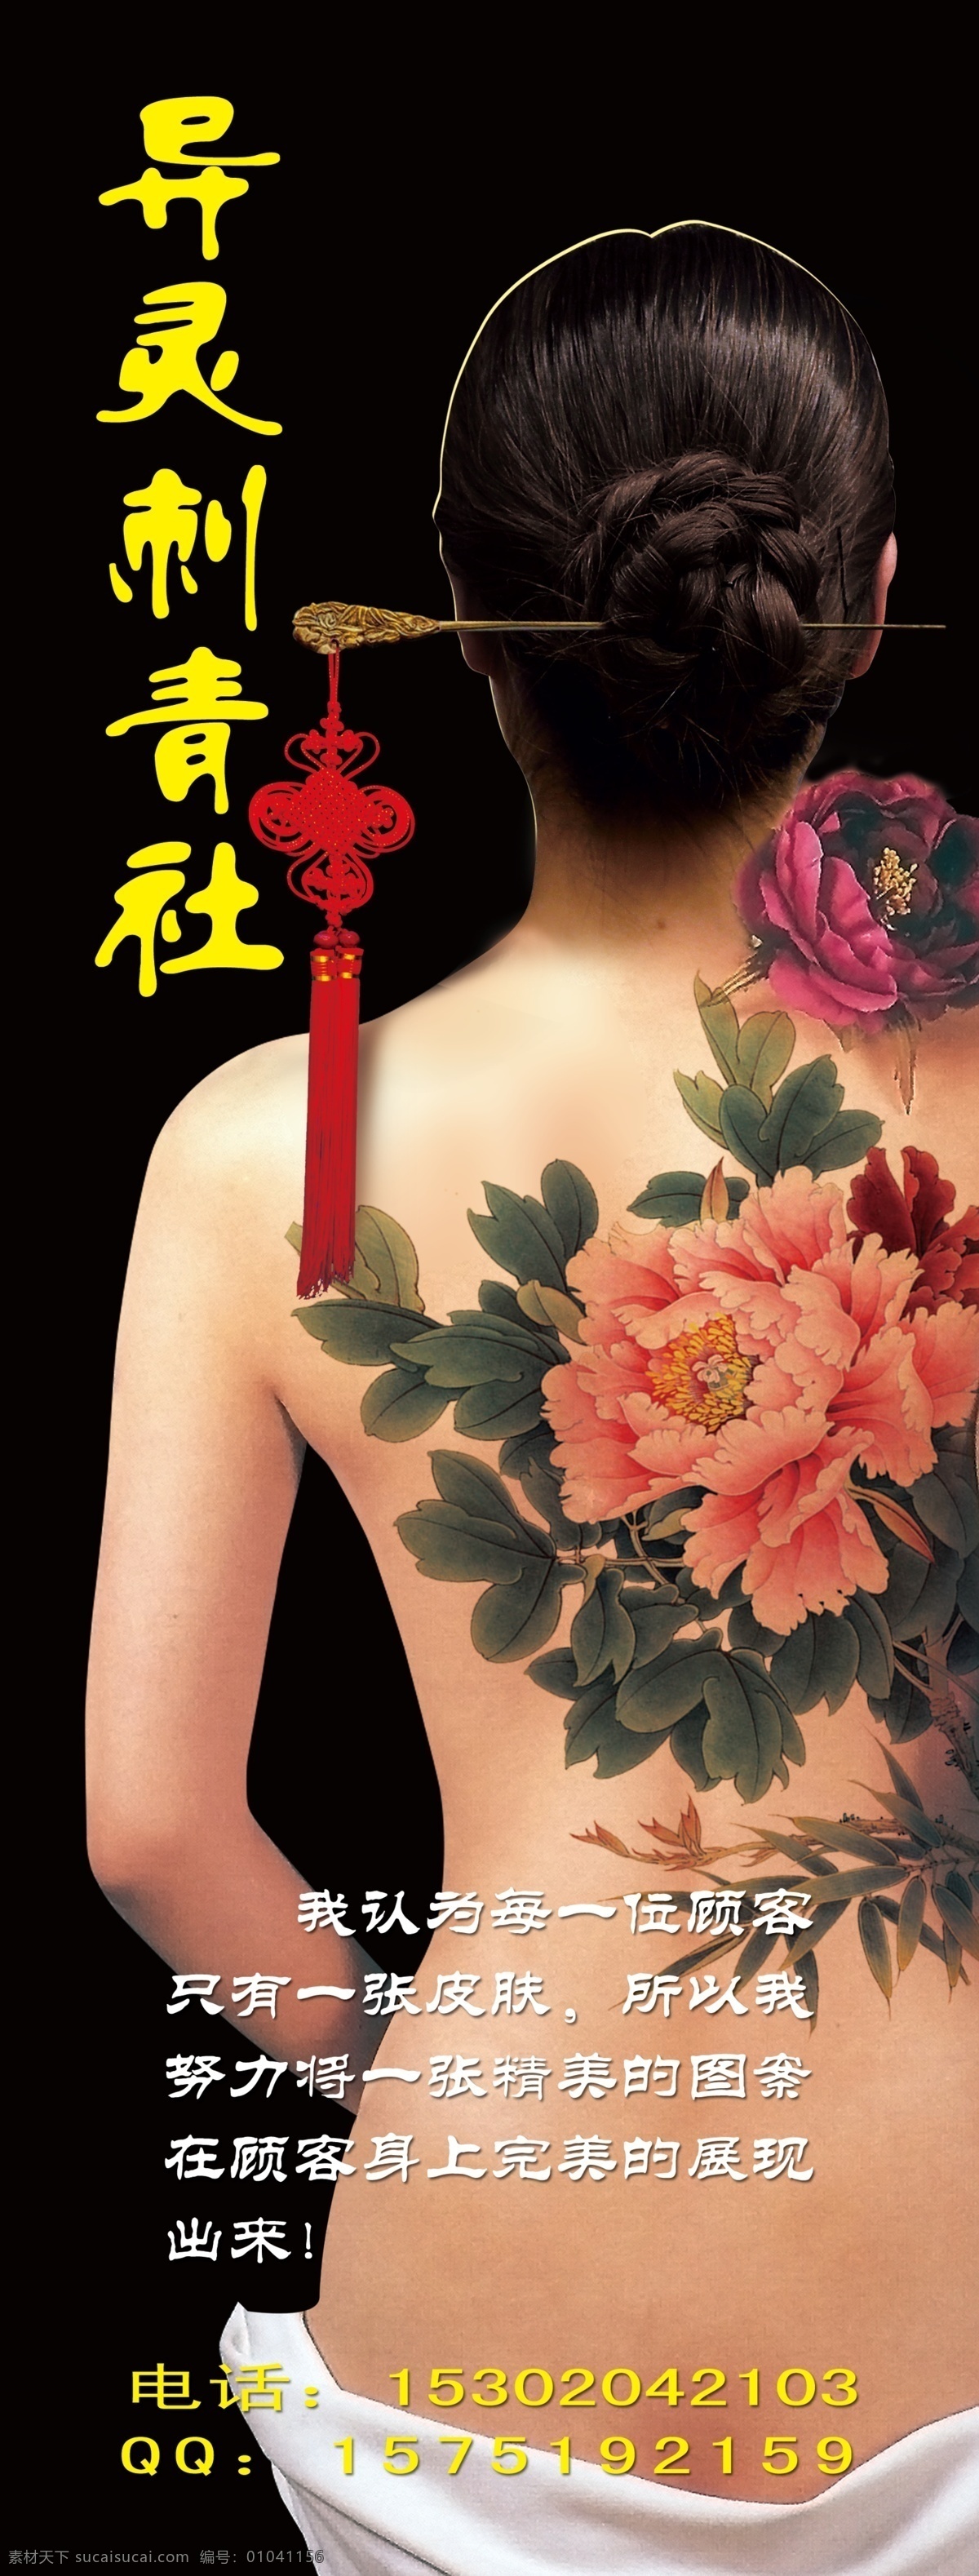 刺青 美女 中国结 牡丹 后背 盘发 纹身 广告设计模板 源文件